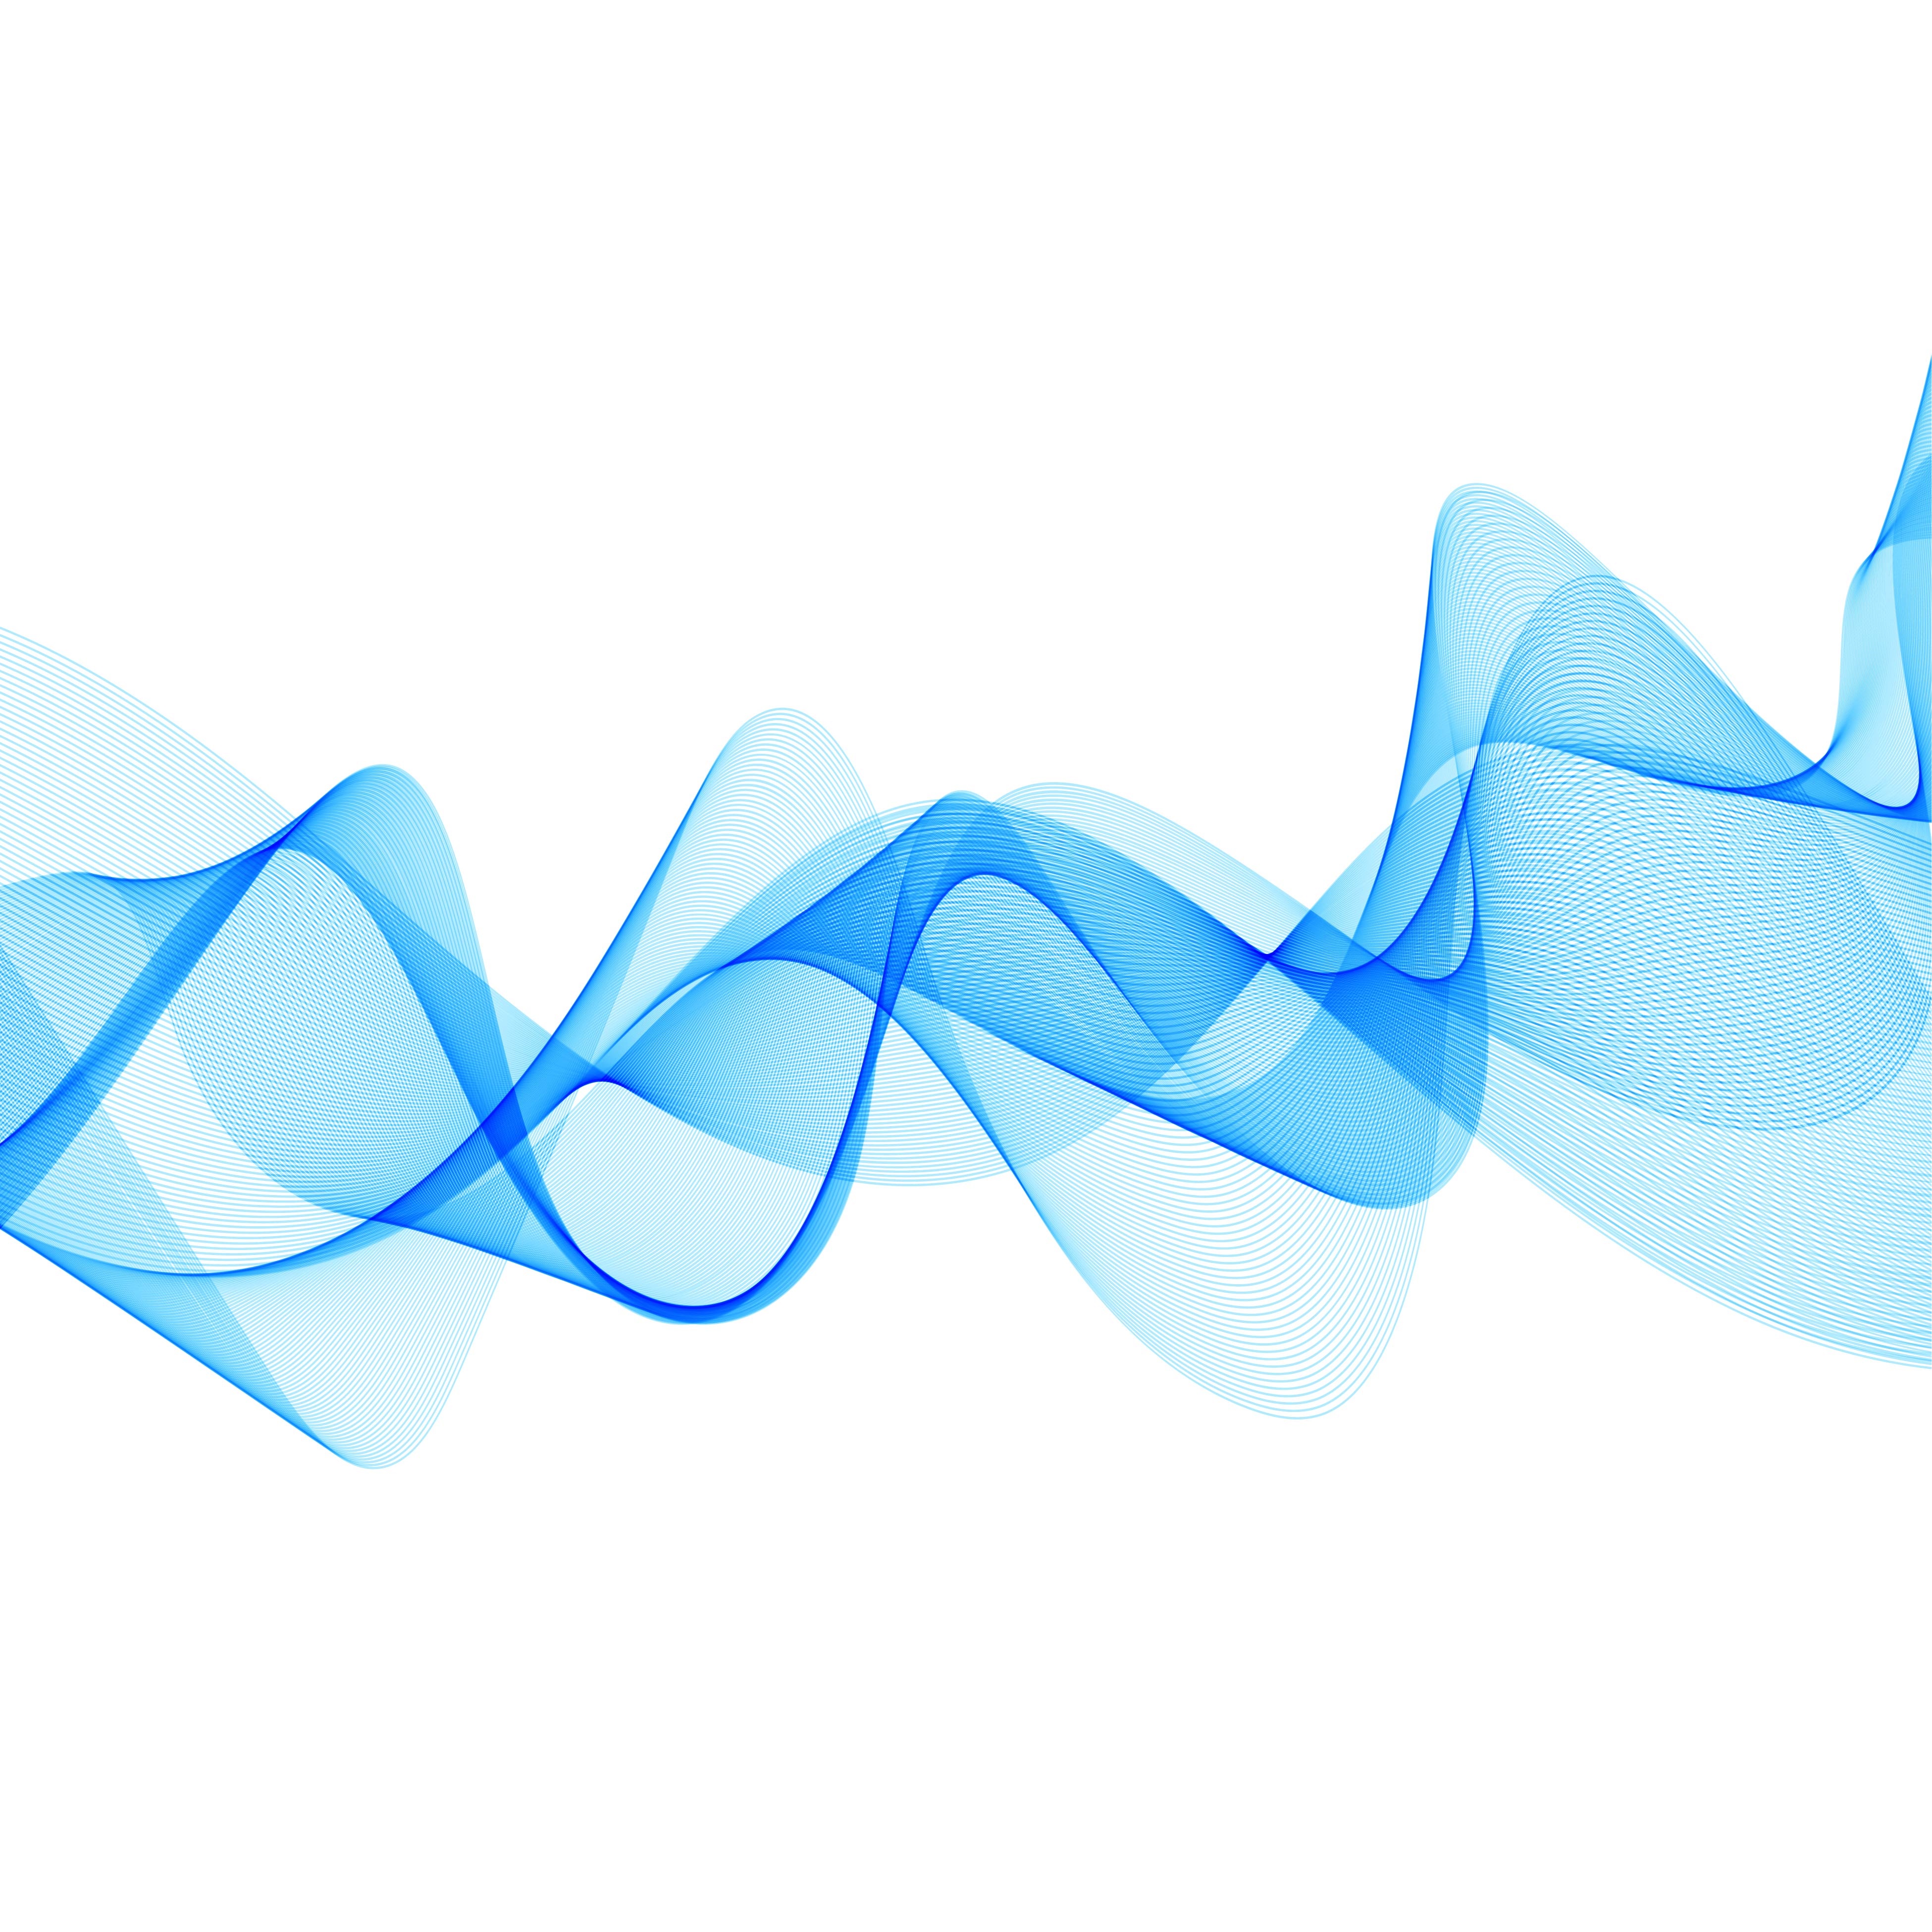 wavelength of a speech pattern